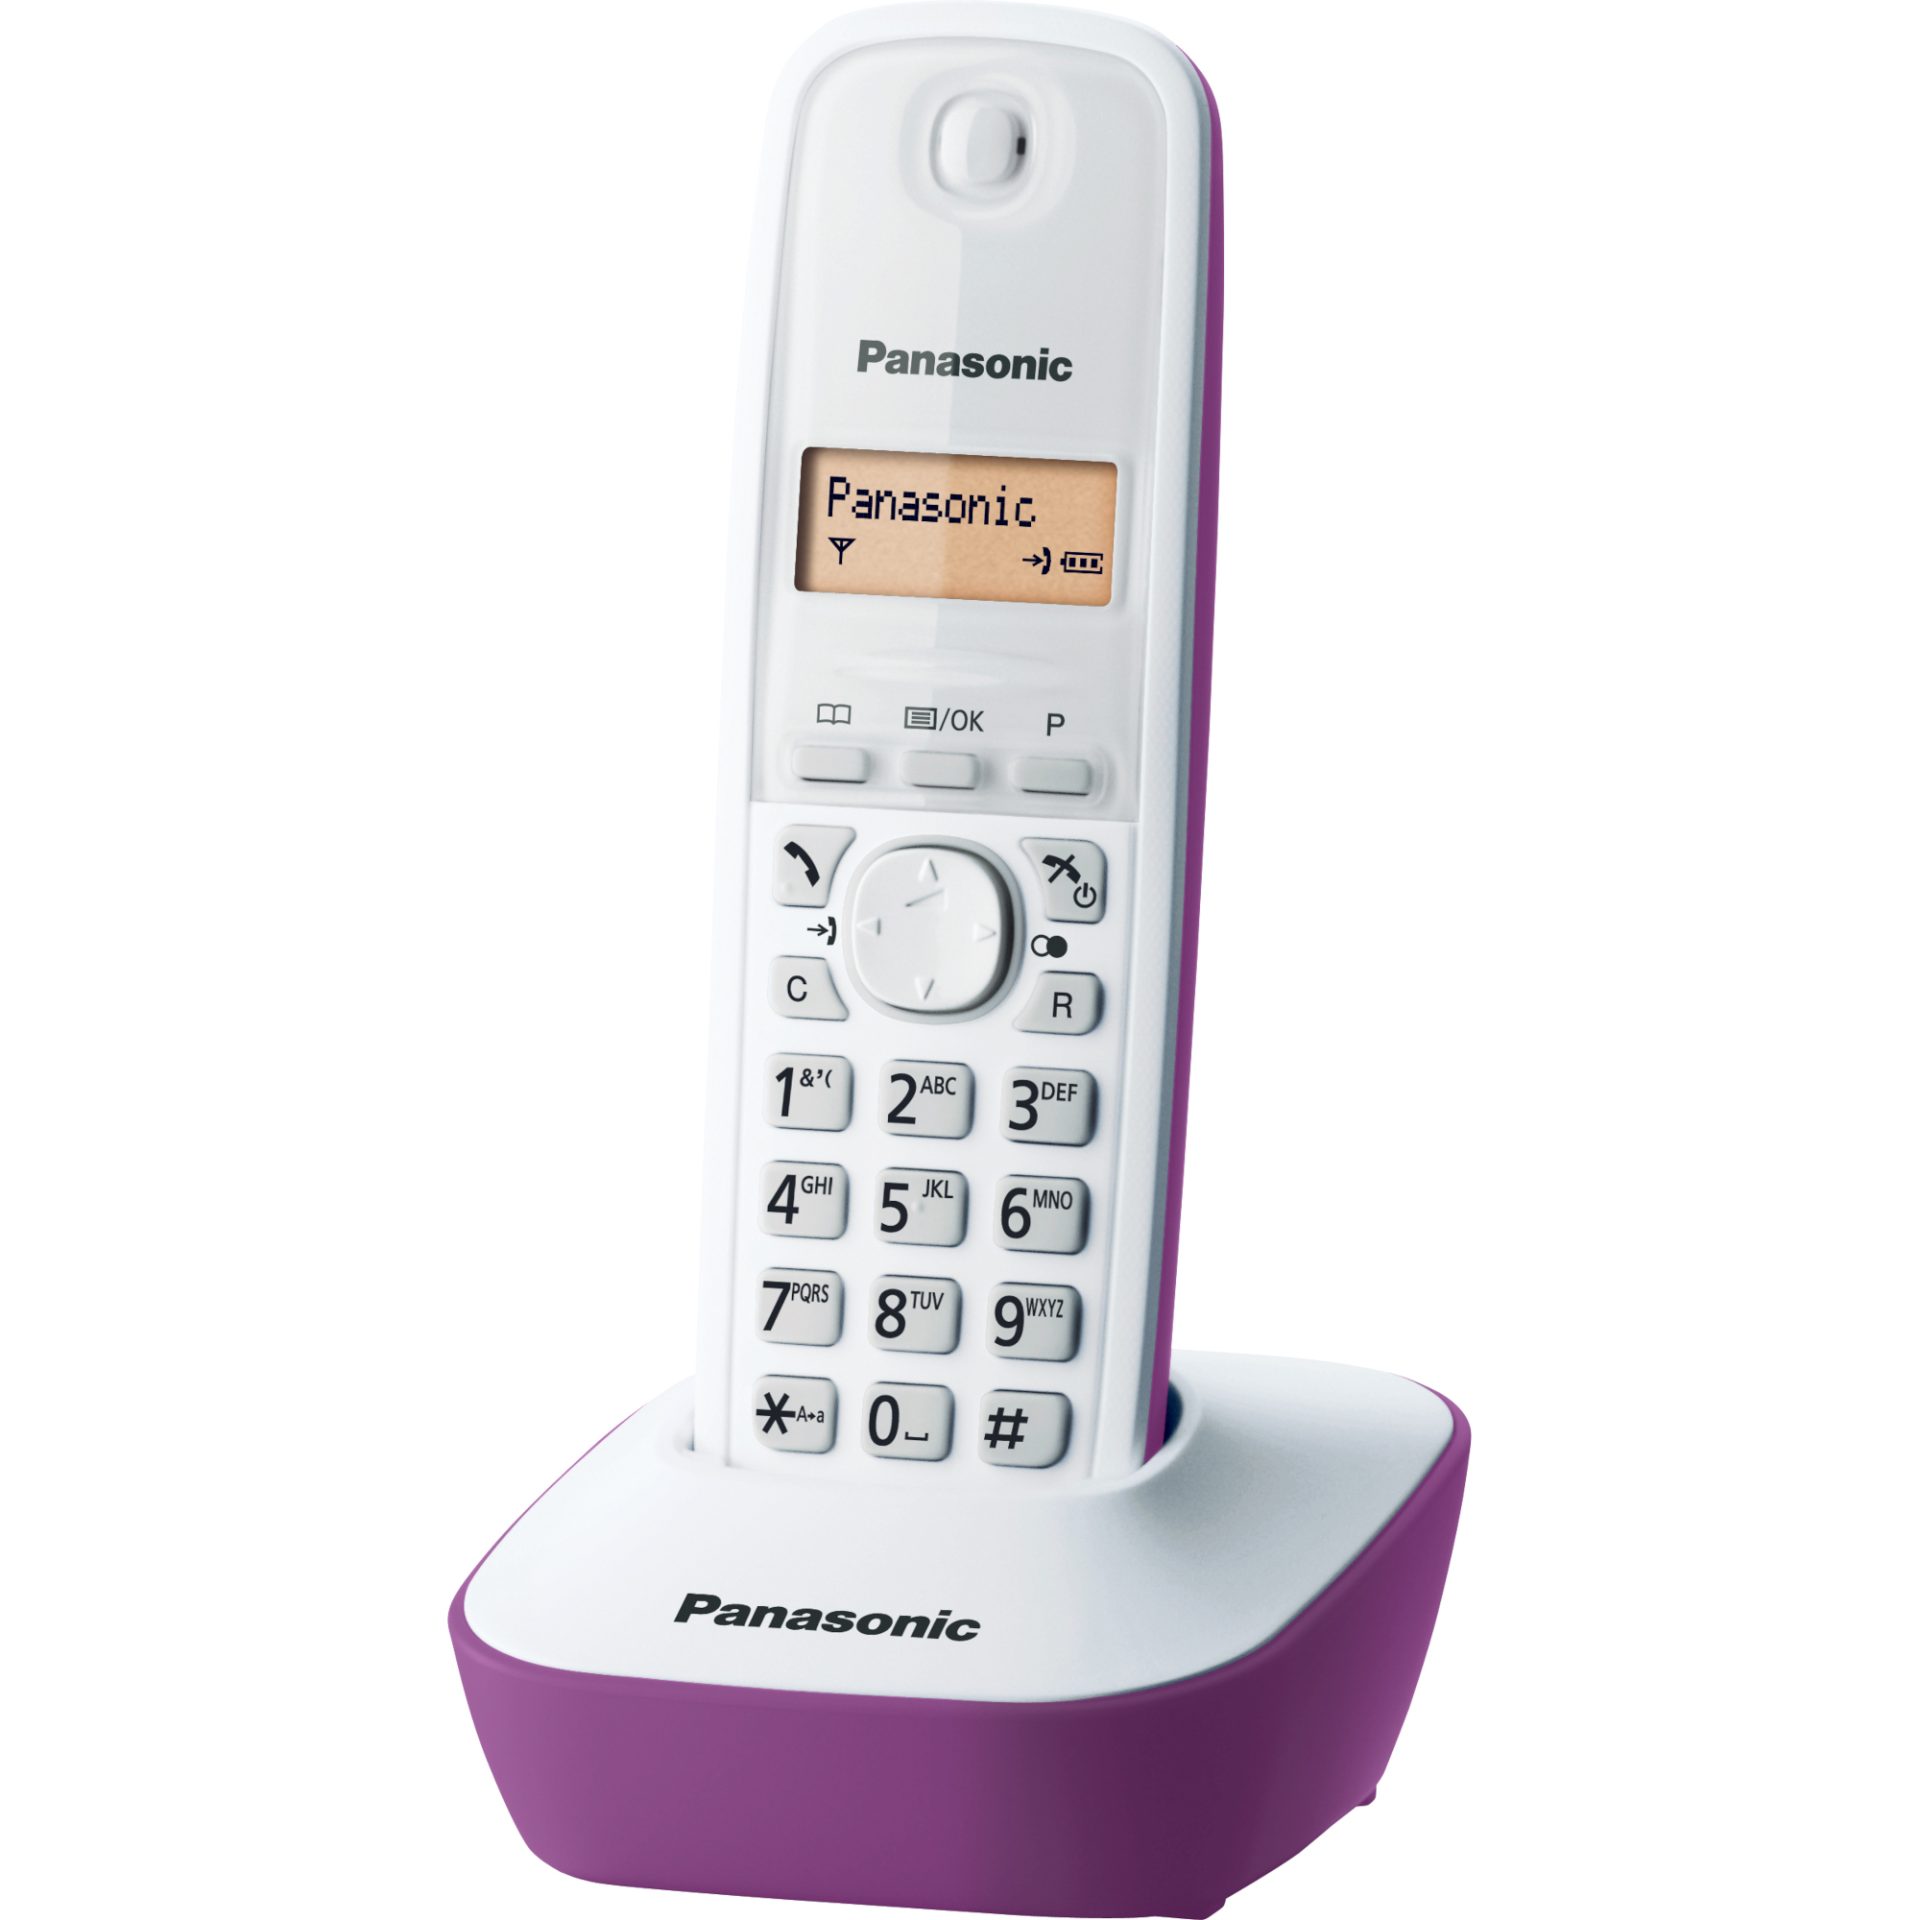 Panasonic KX-TG1611 DECT bezdrátový telefon (snadné použití, telefonní seznam 50 položek, podsvícený LCD displej, hodiny, budík), bílo-fialová